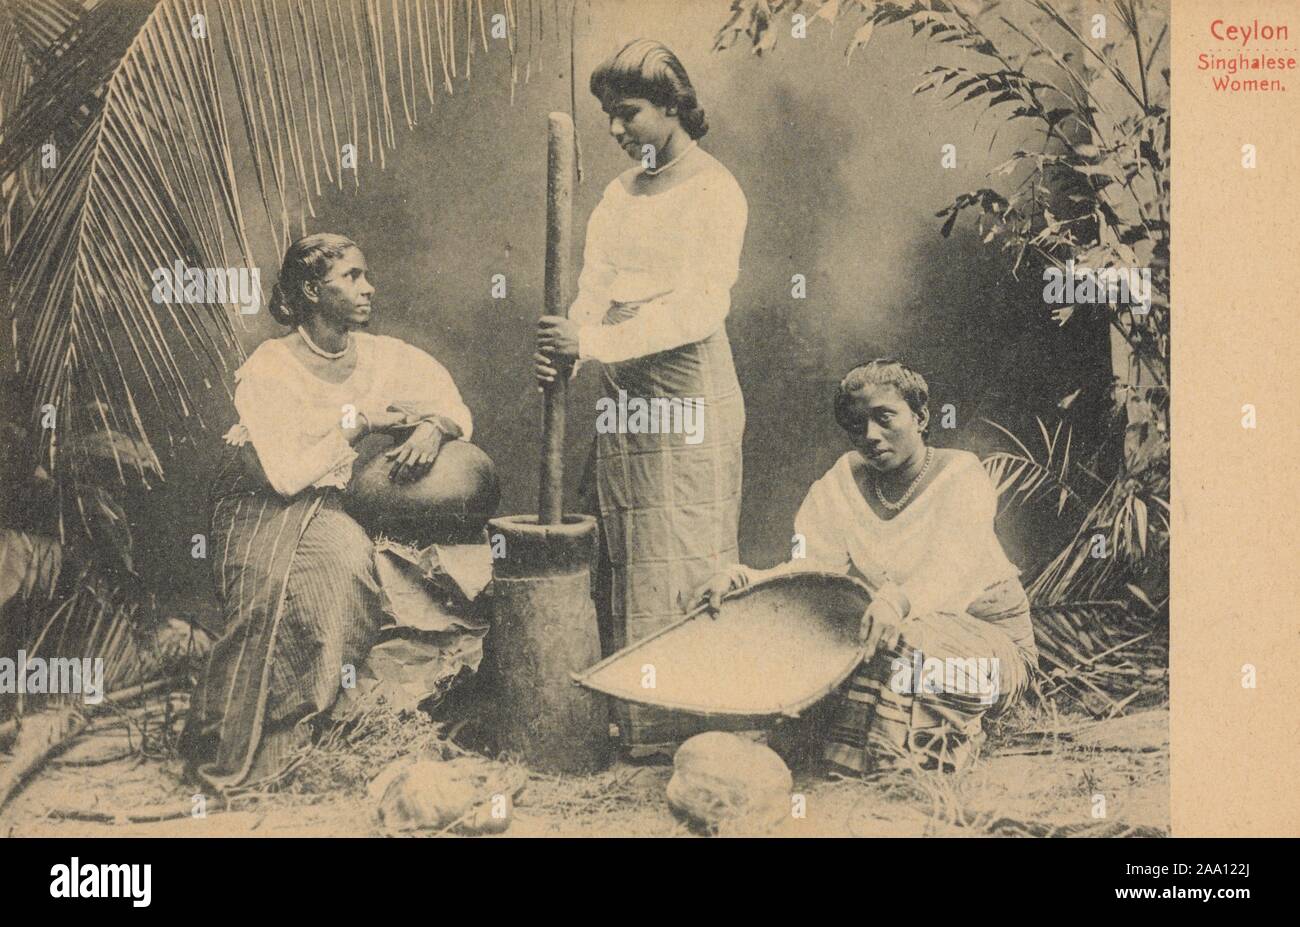 Carte postale monochrome avec trois femmes cinghalaise de décorticage du riz dans un mortier, de Sri Lanka (anciennement Ceylan), publié par A.W.A. Plaque et Co, 1915. À partir de la Bibliothèque publique de New York. () Banque D'Images